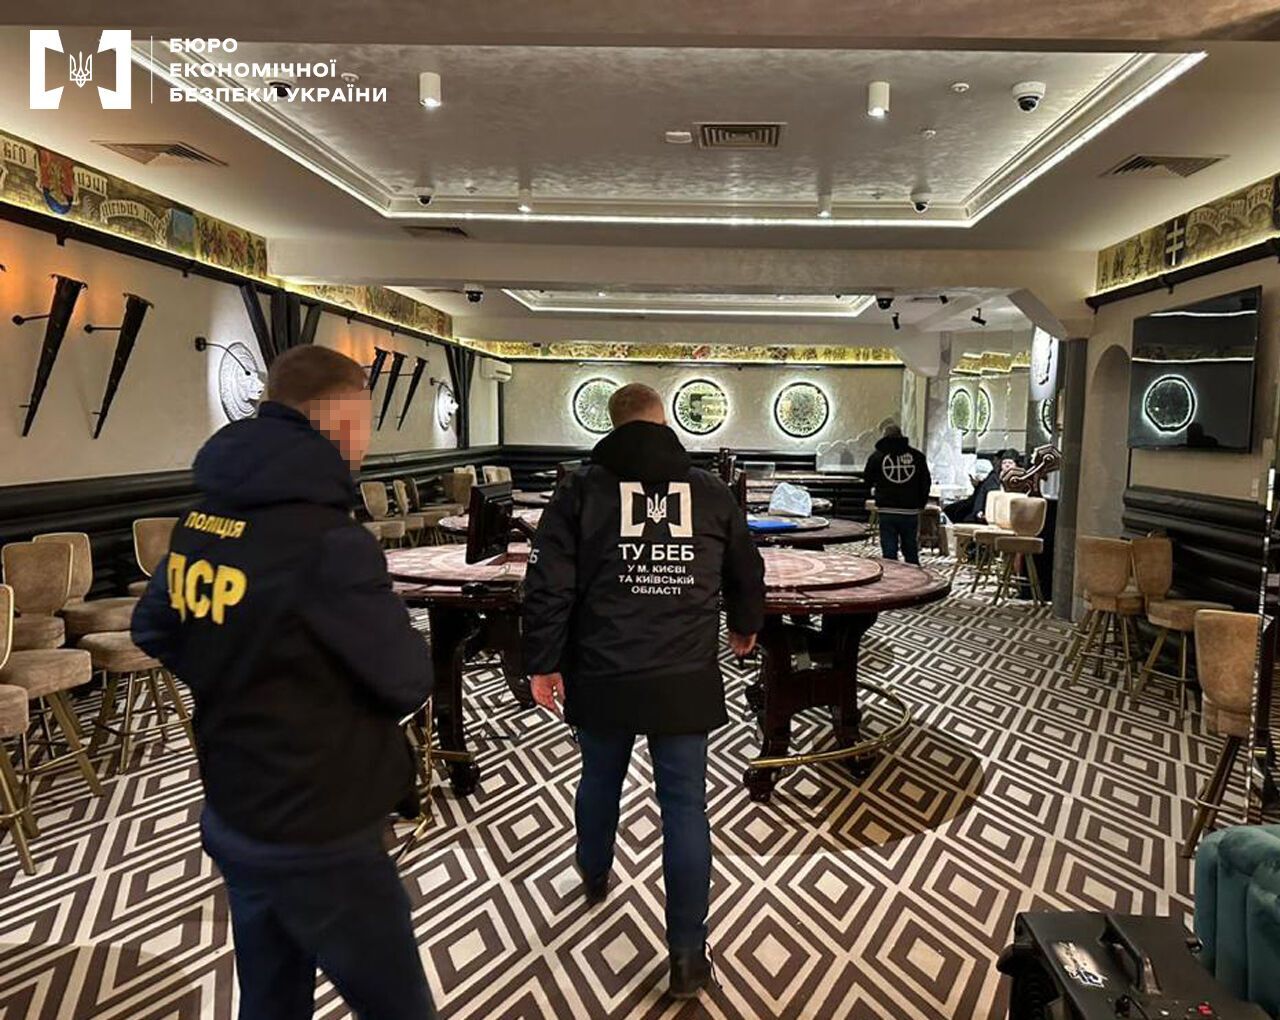 В центре Киева прекратили работу подпольного VIP-казино, действовало в ресторане. Фото